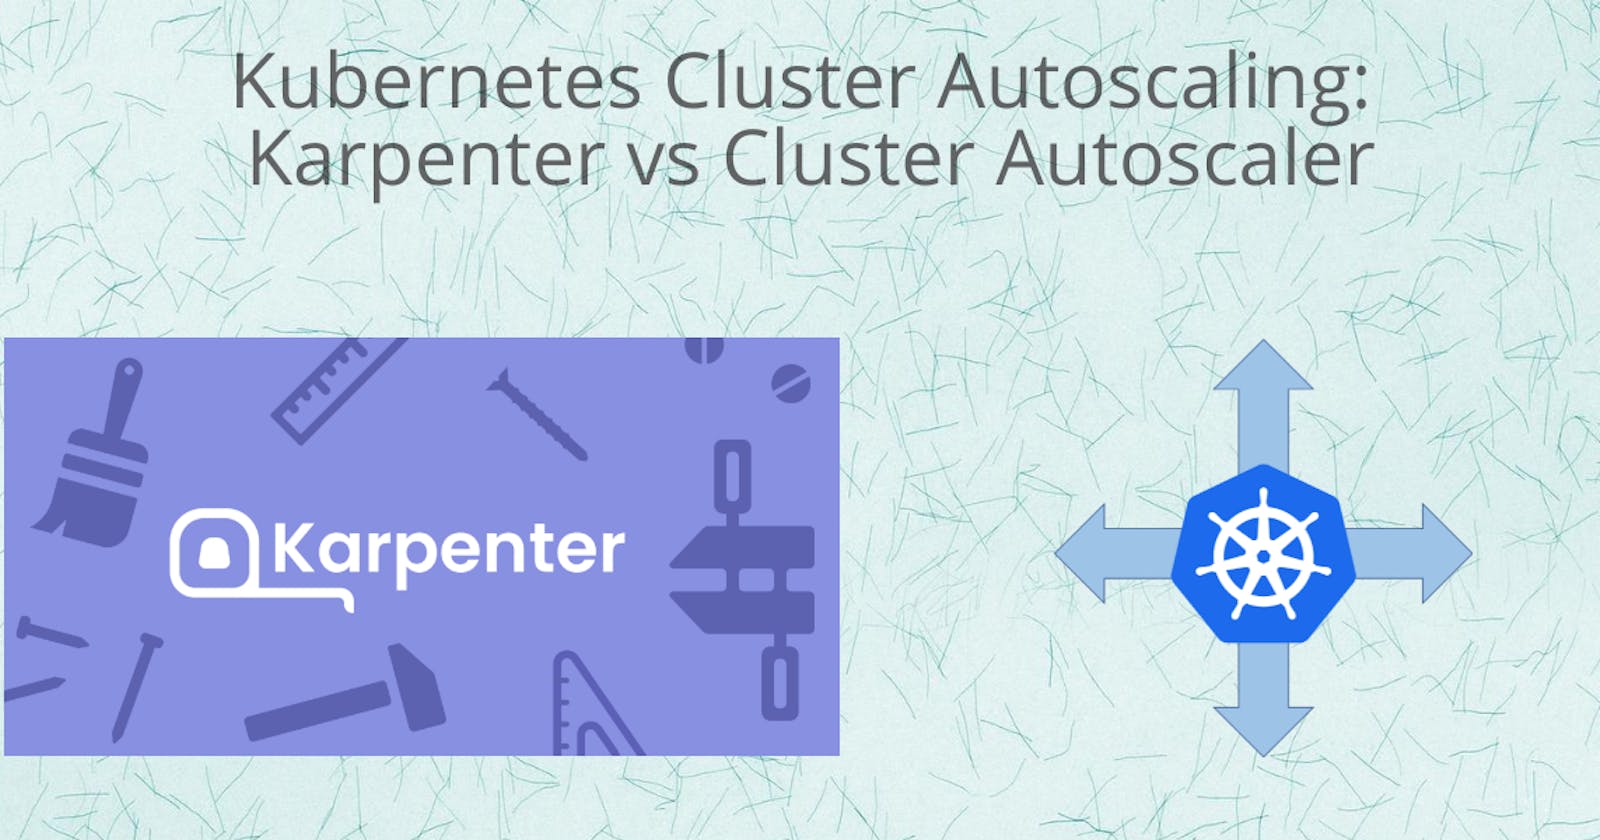 Kubernetes Cluster Autoscaling: Karpenter vs Cluster Autoscaler